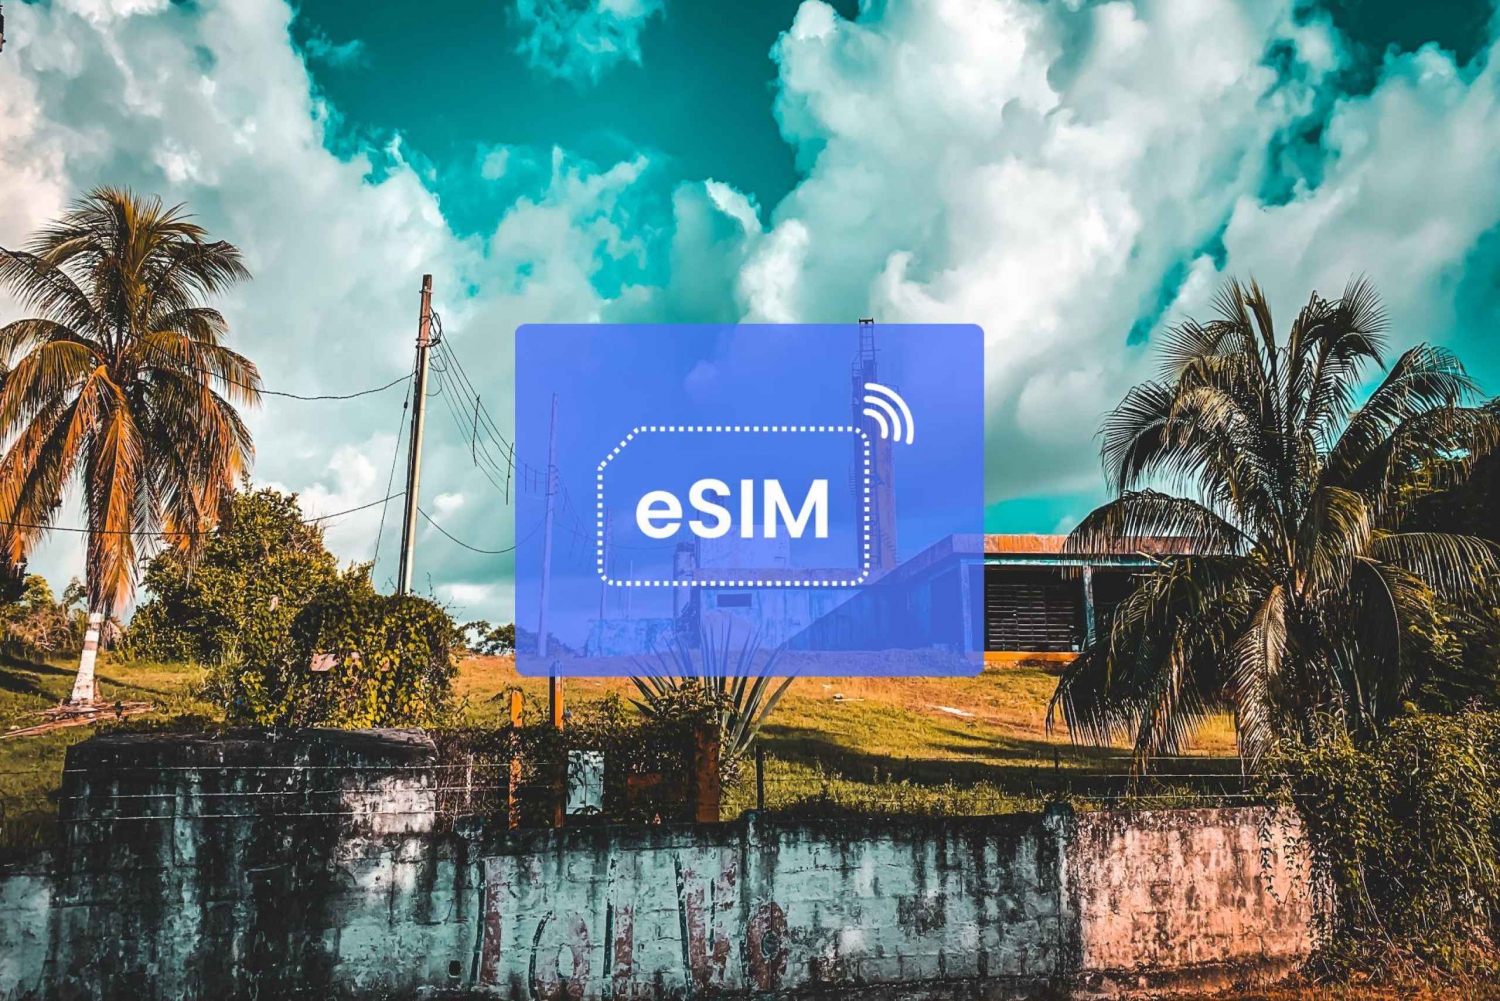 Chetumal: Mexico eSIM Roaming Mobile Data Plan